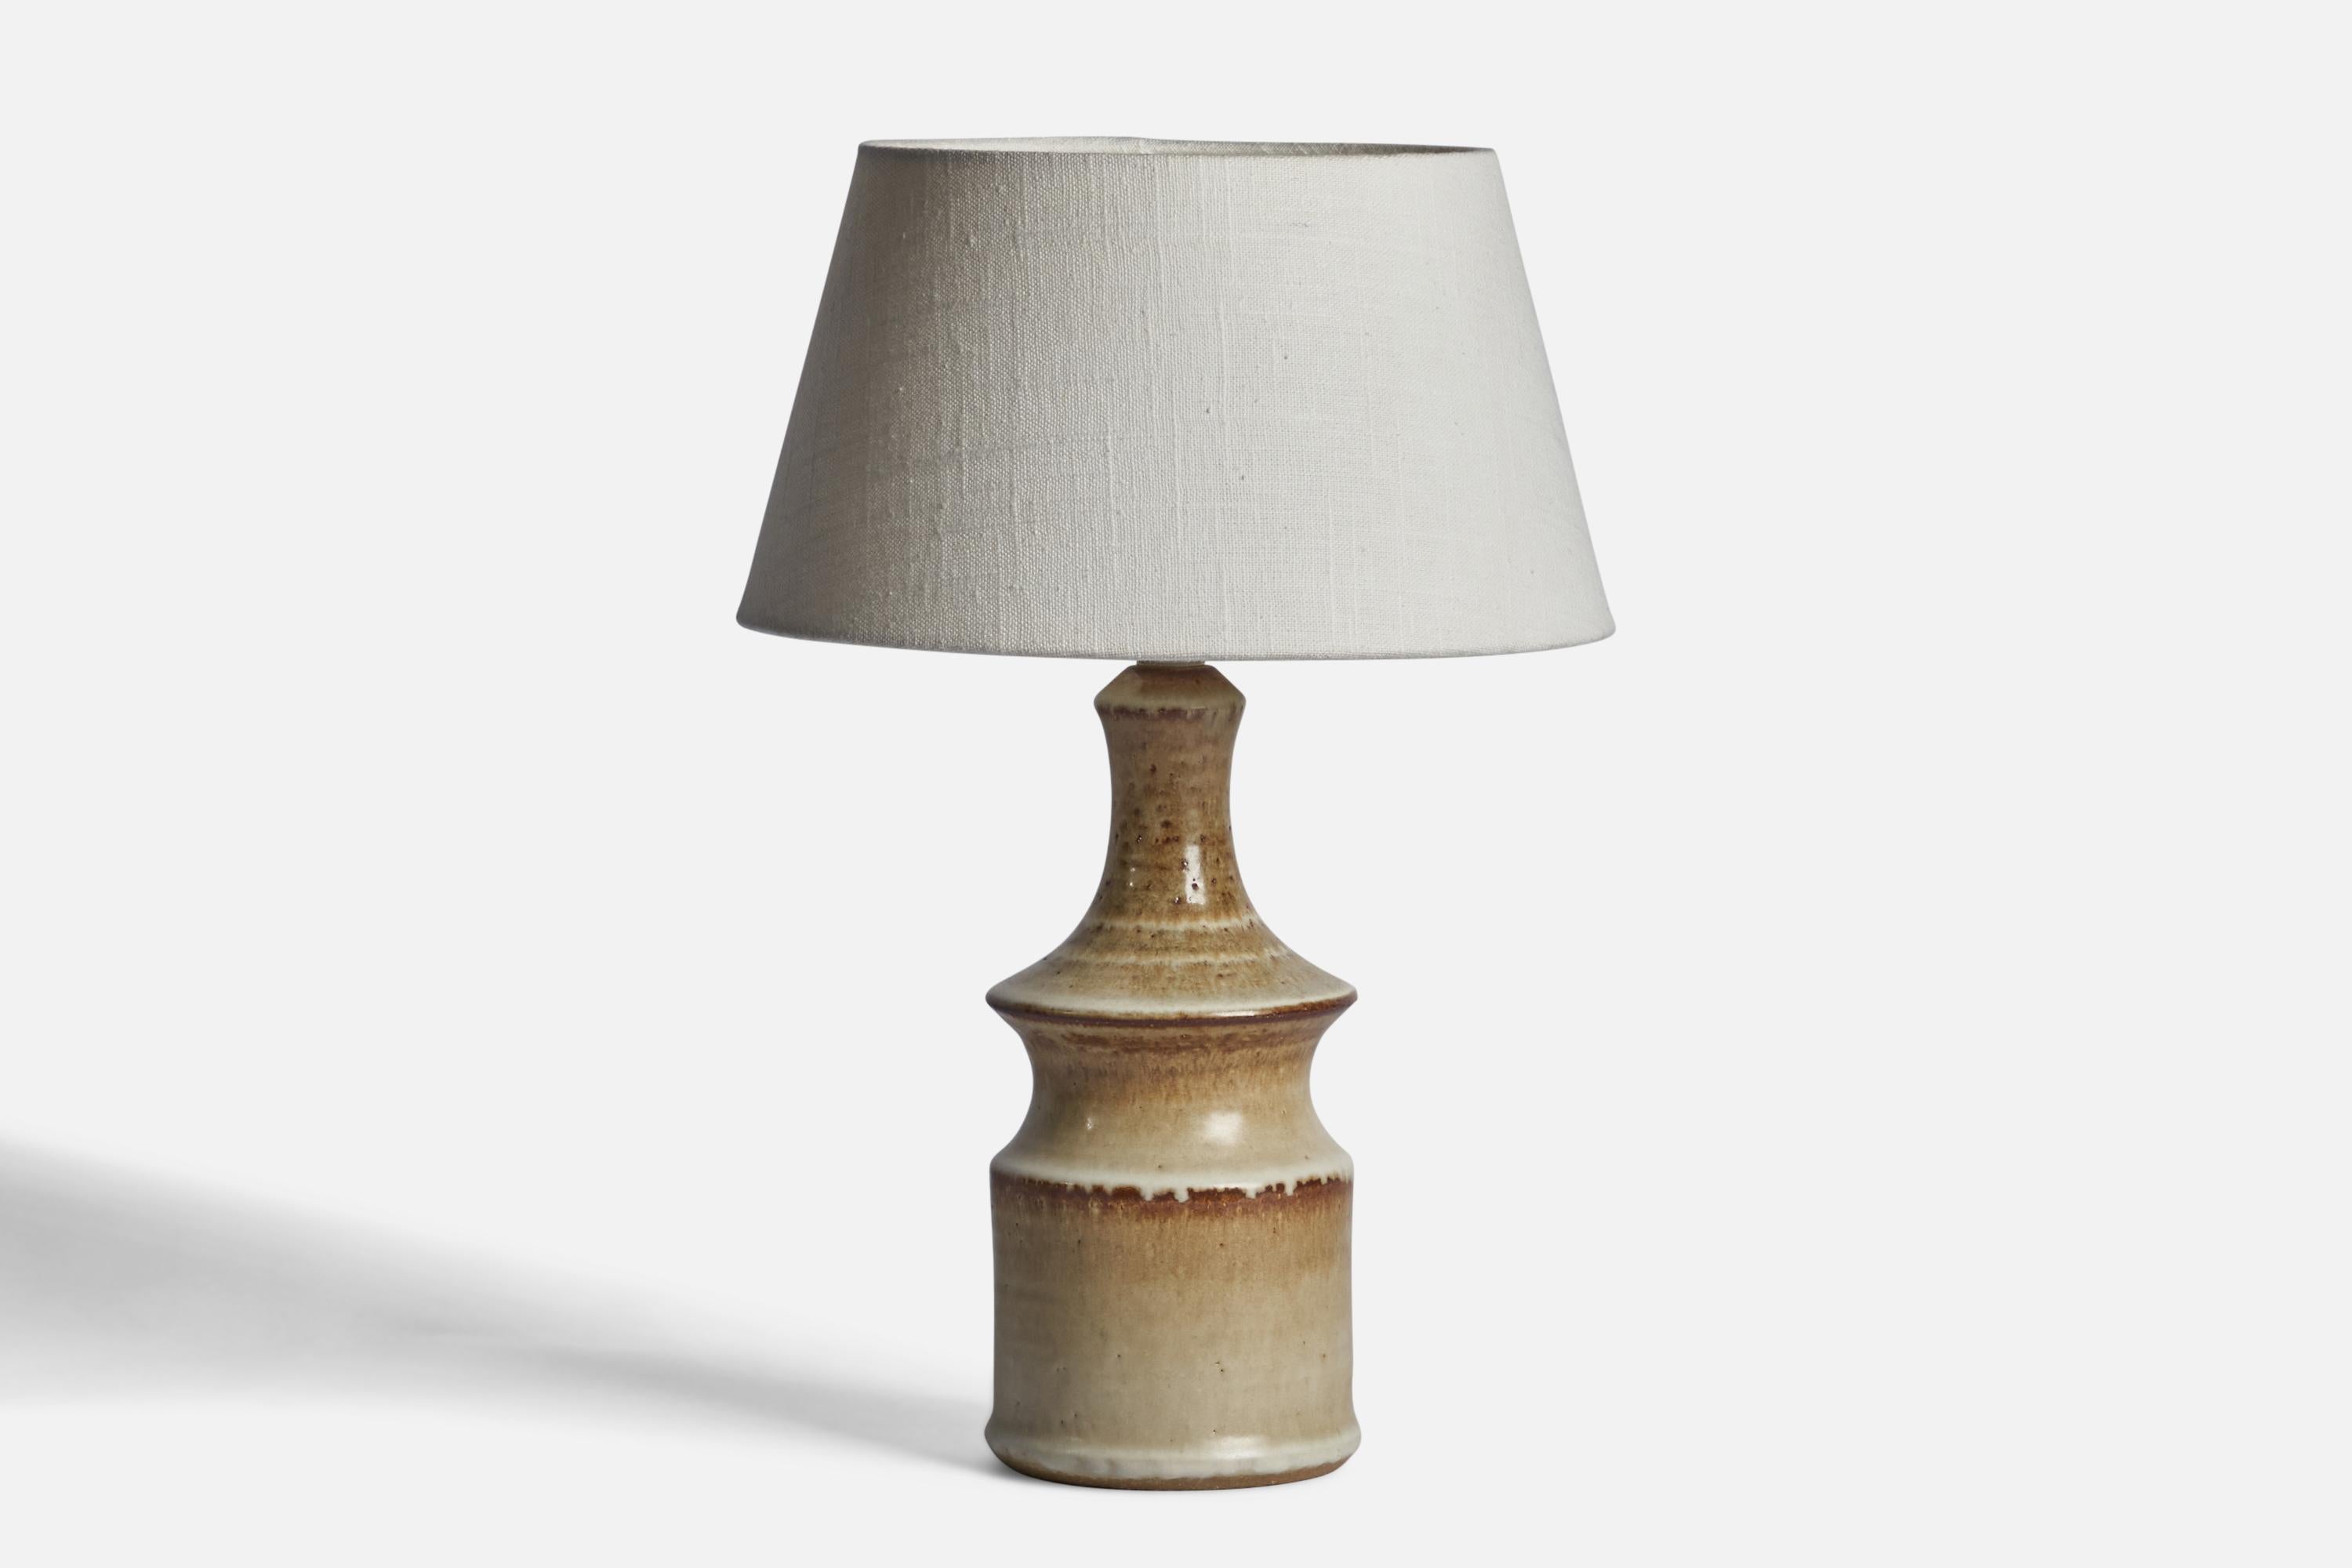 Lampe de table en grès conçue par Joseph Simon et produite par Söholm, Danemark, années 1960.

Dimensions de la lampe (pouces) : 11.5